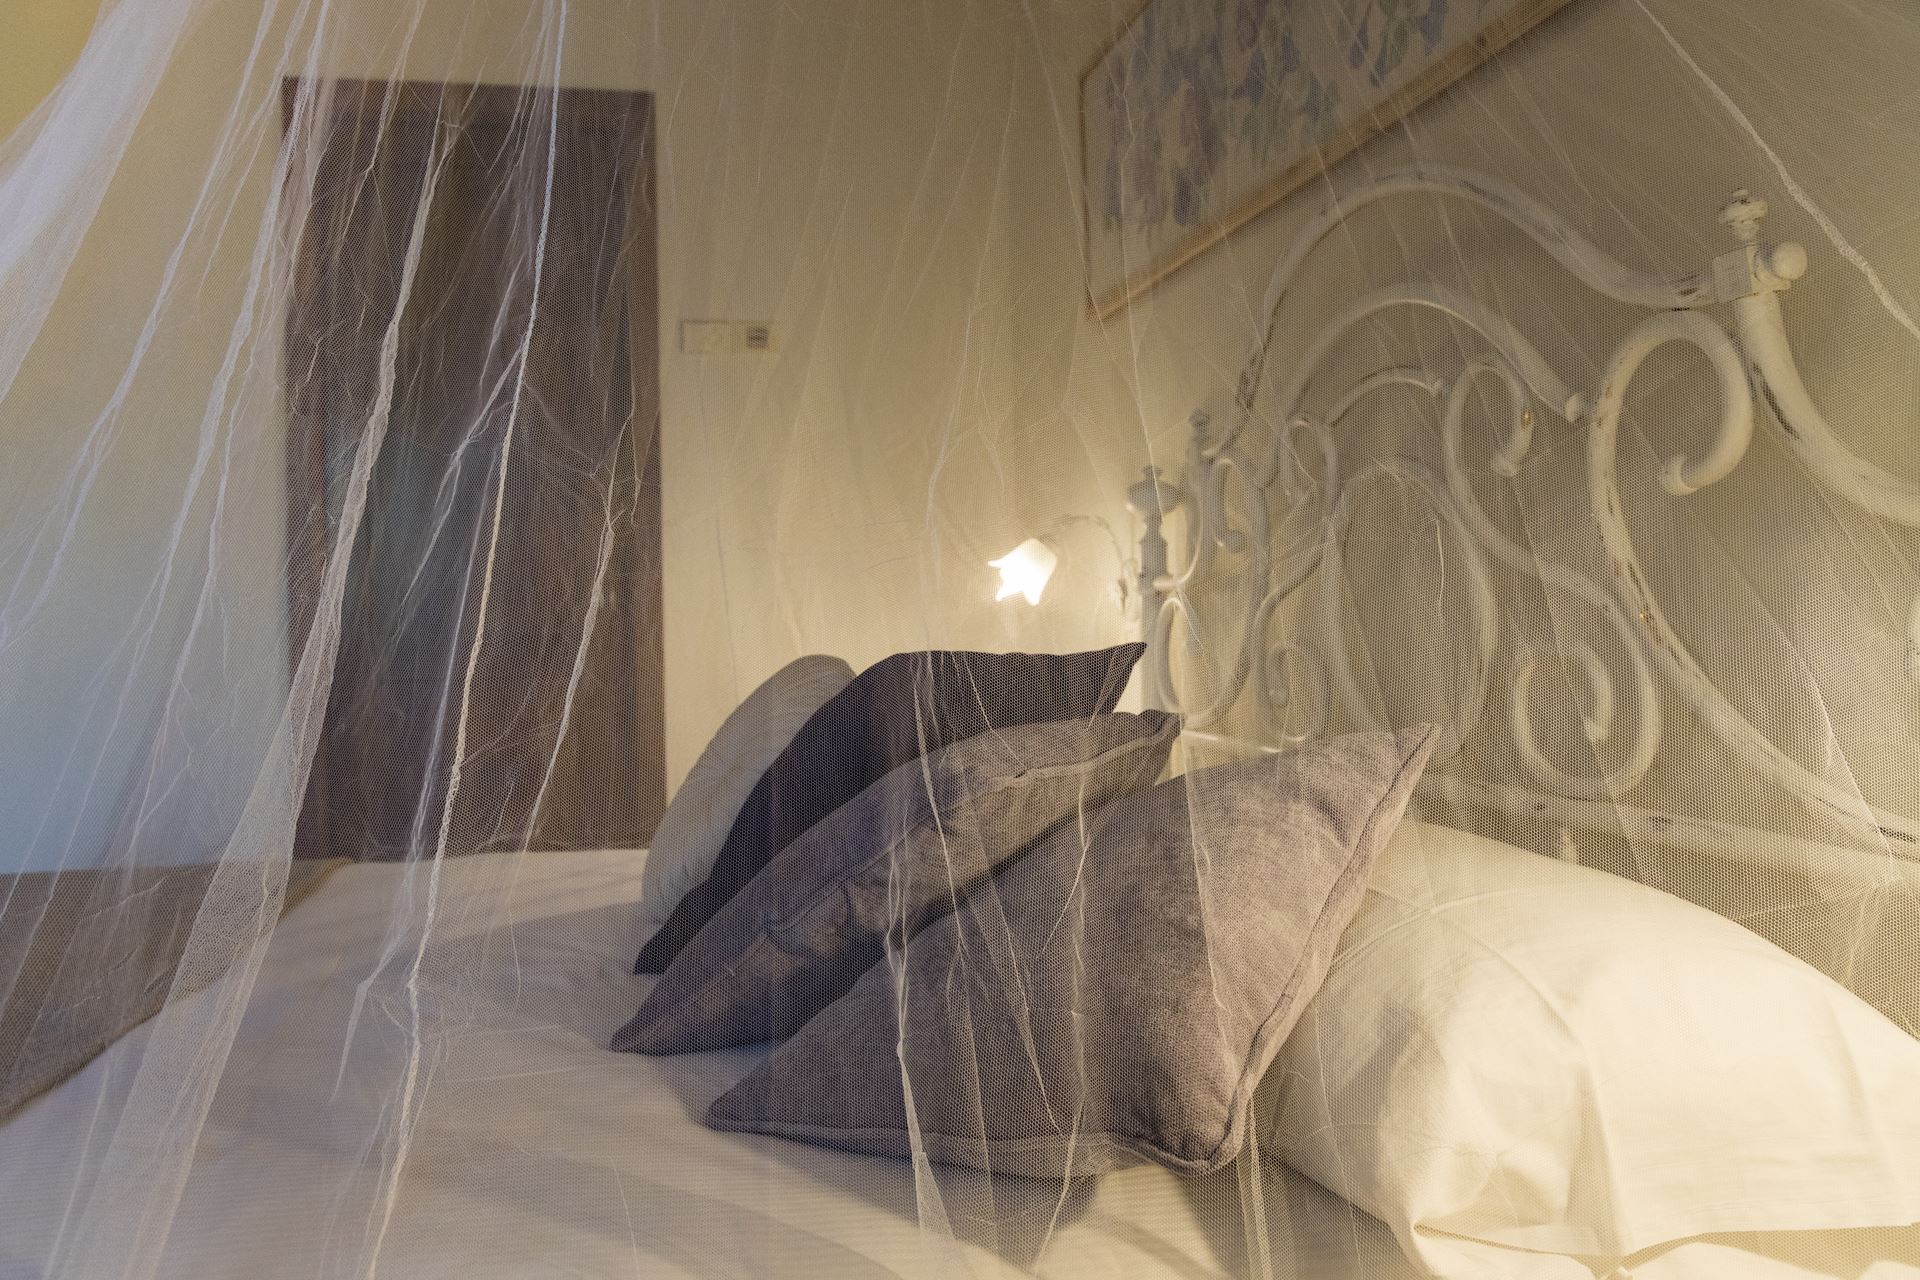 La camera romantica si sviluppa in un unico ambiente, accogliente e ben illuminato dalla finestra con vista sul rigoglioso orto.